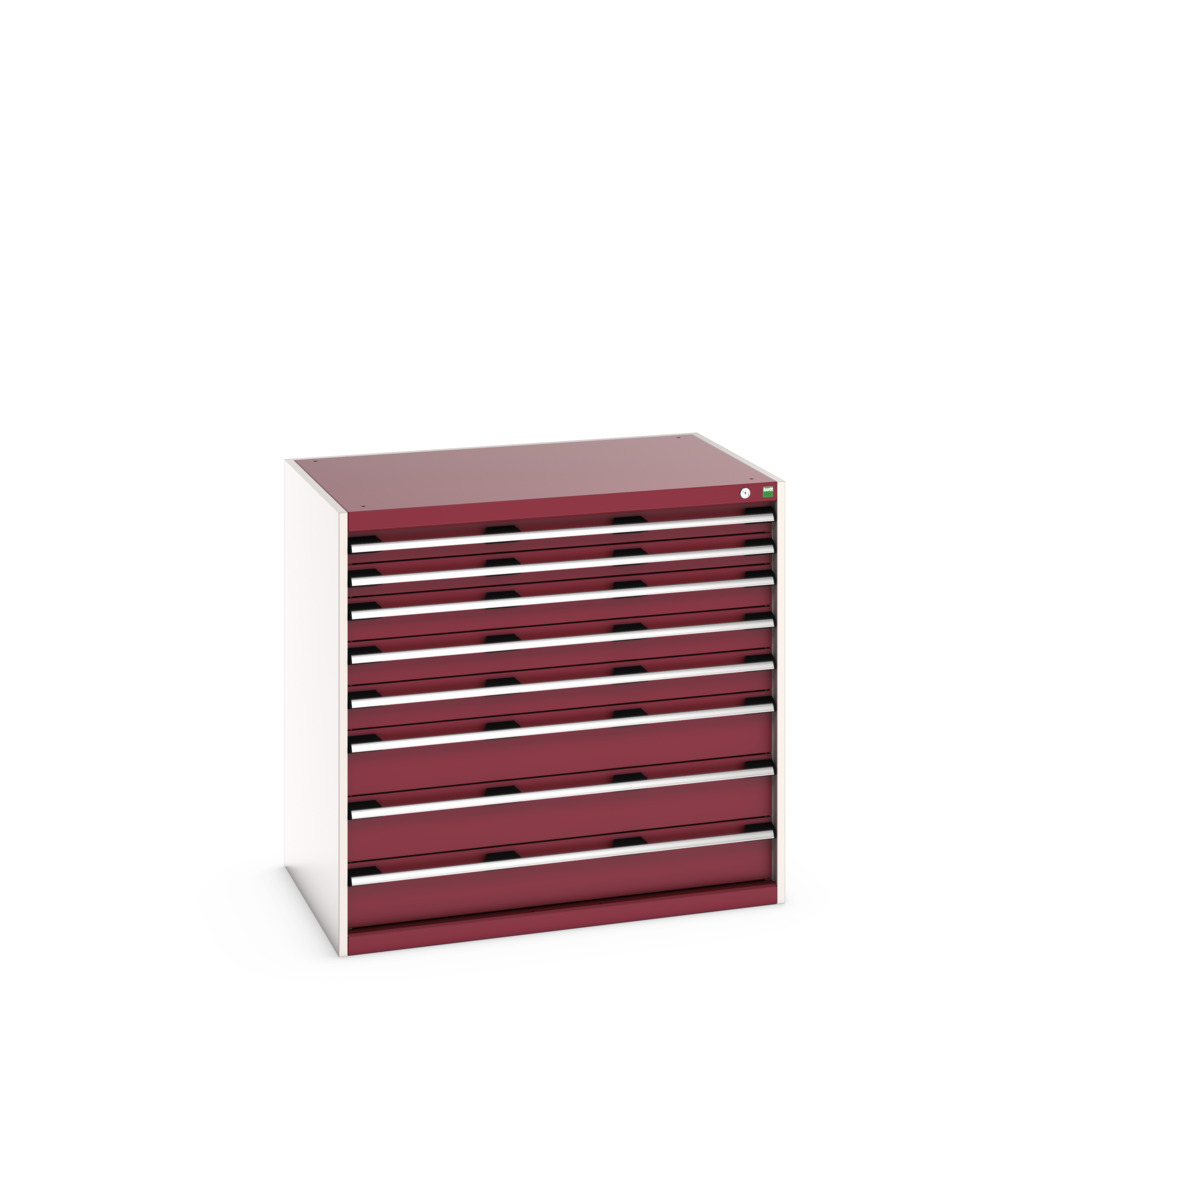 40029025.24V - cubio drawer cabinet